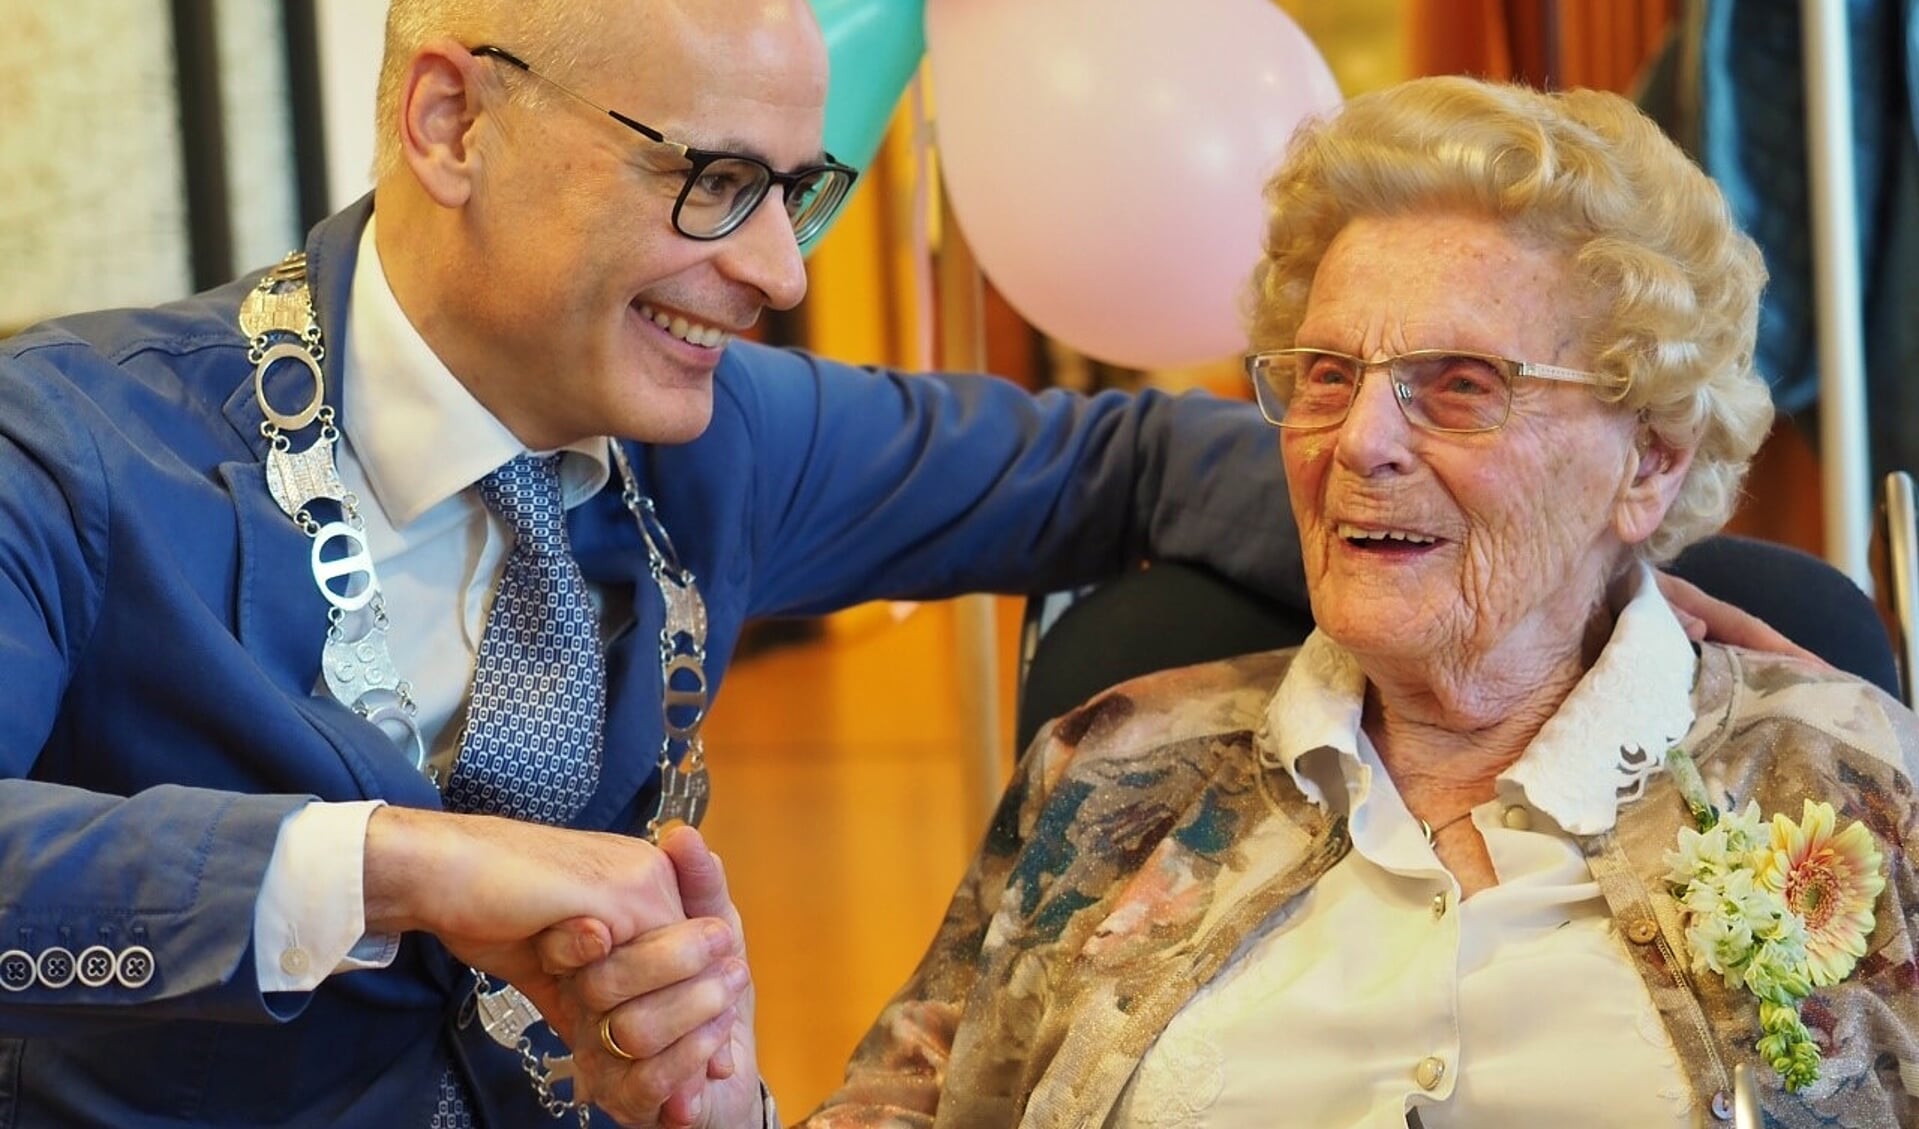 Burgemeester Emile Jaensch feliciteert mevrouw Keijzer met haar 107e verjaardag. Zij is met haar leeftijd de oudste inwoner van de regio. | Foto Henk Keijzer